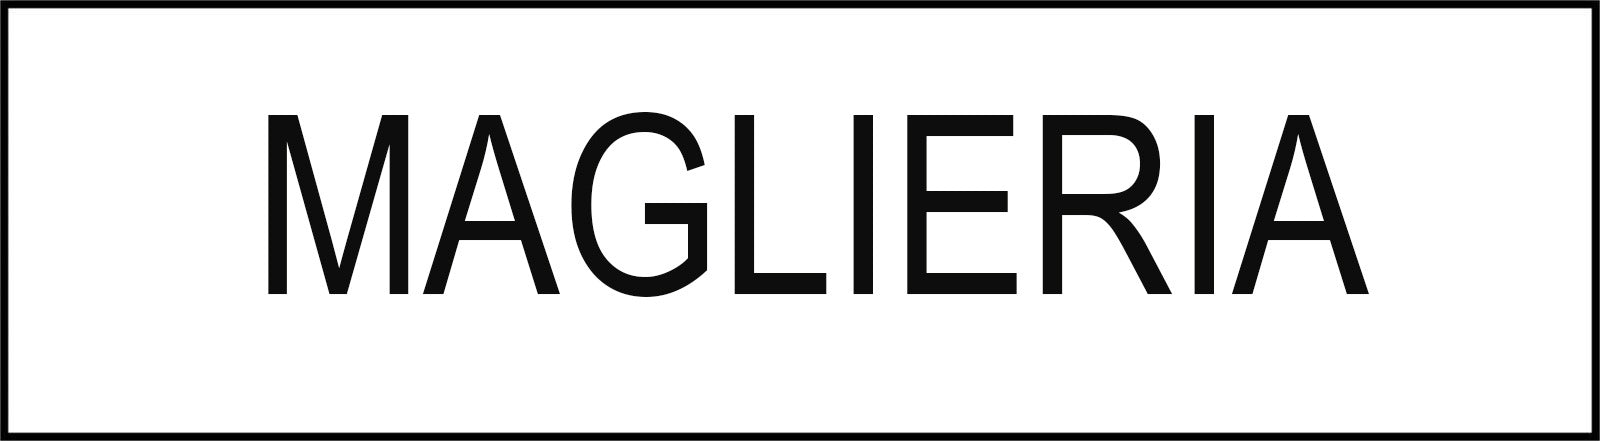 Maglieria